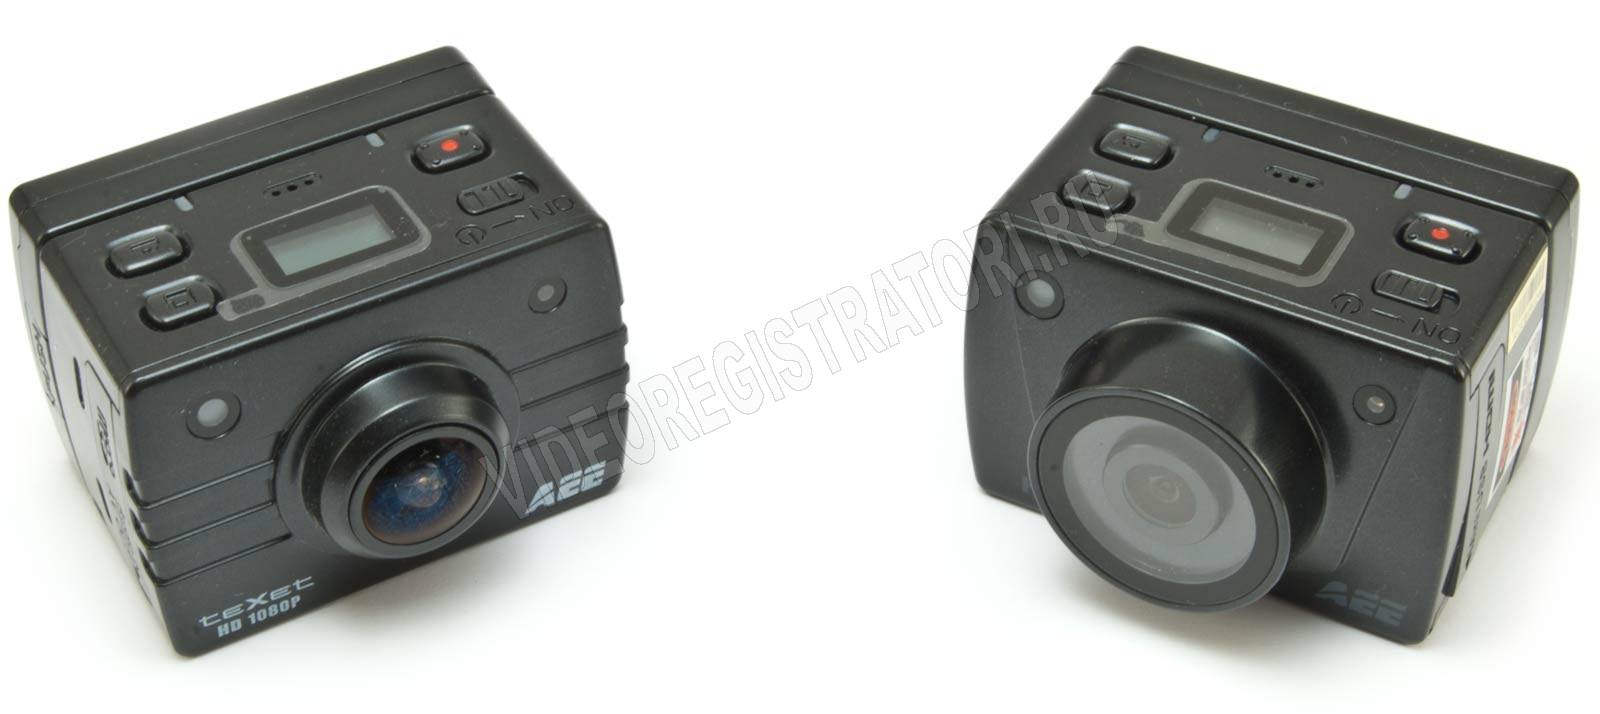 Aee blackeye xtr - автомобильный full hd видеорегистратор с функцией экшн-камеры, тест-обзор